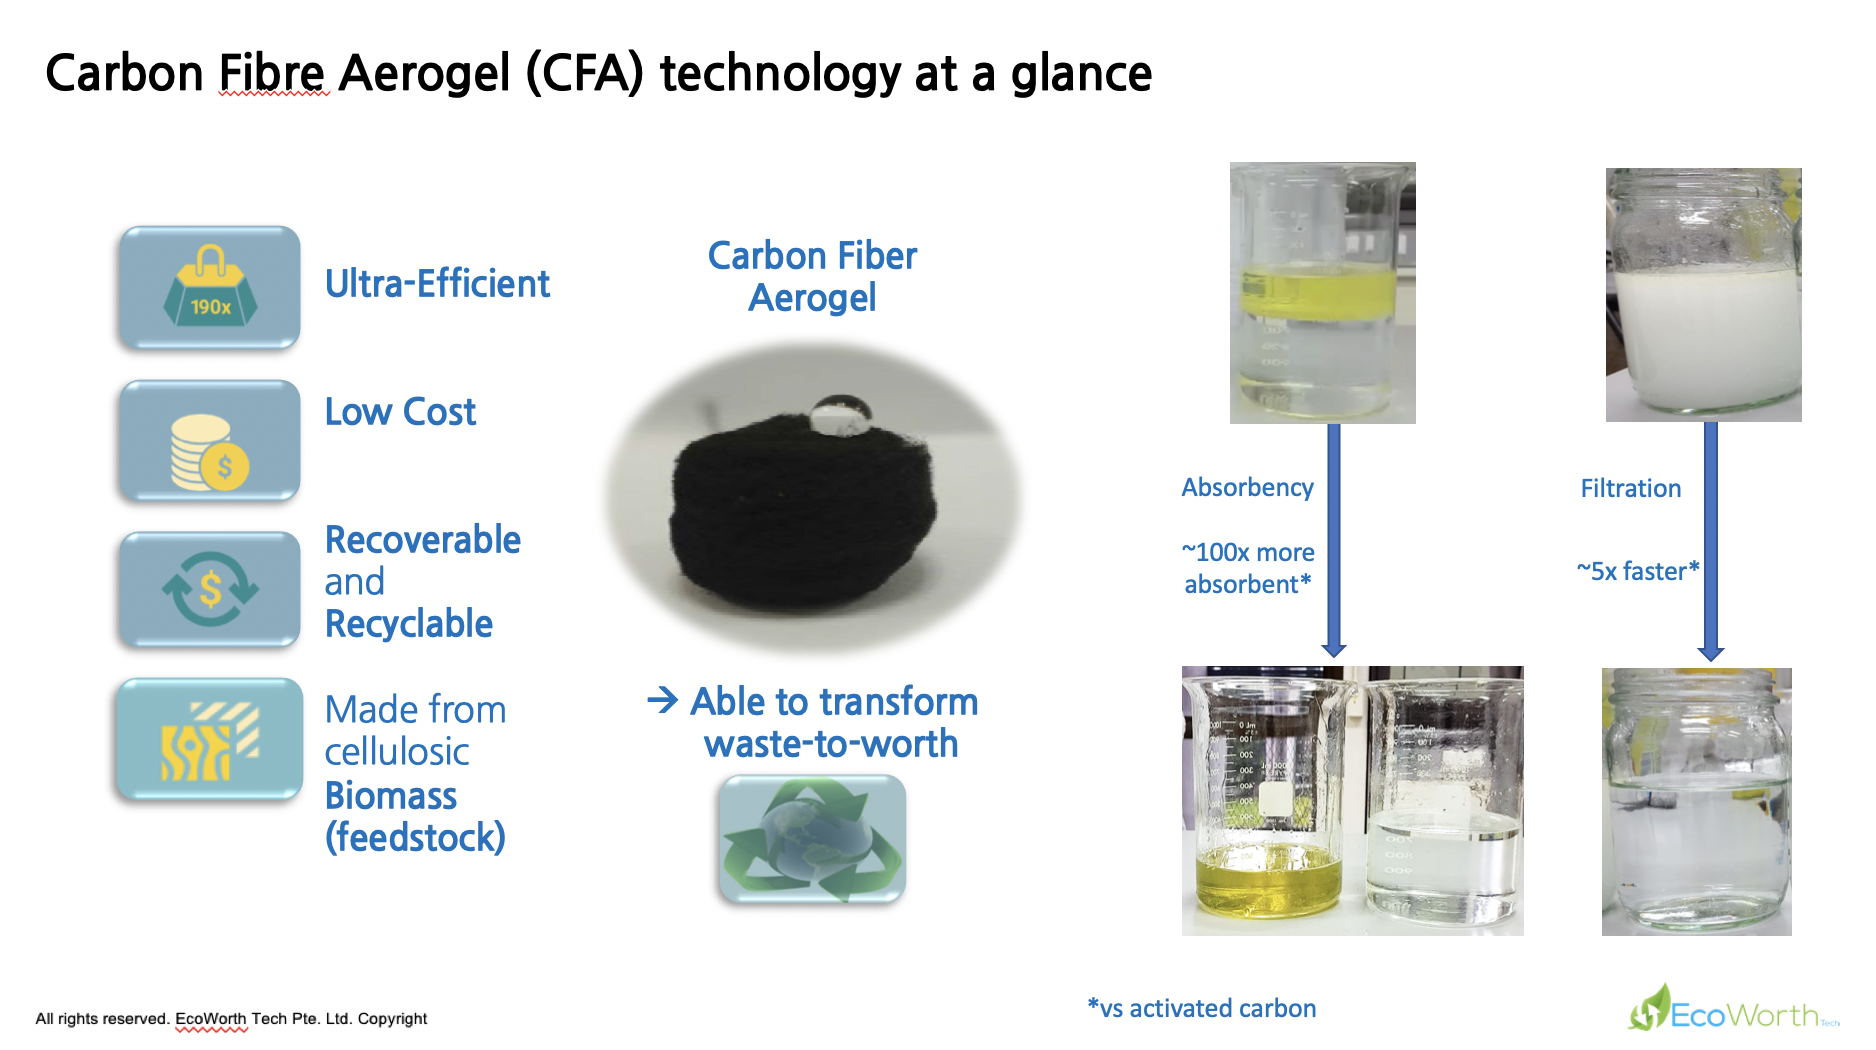 Gallery Carbon Fibre Aerogel (CFA) 2